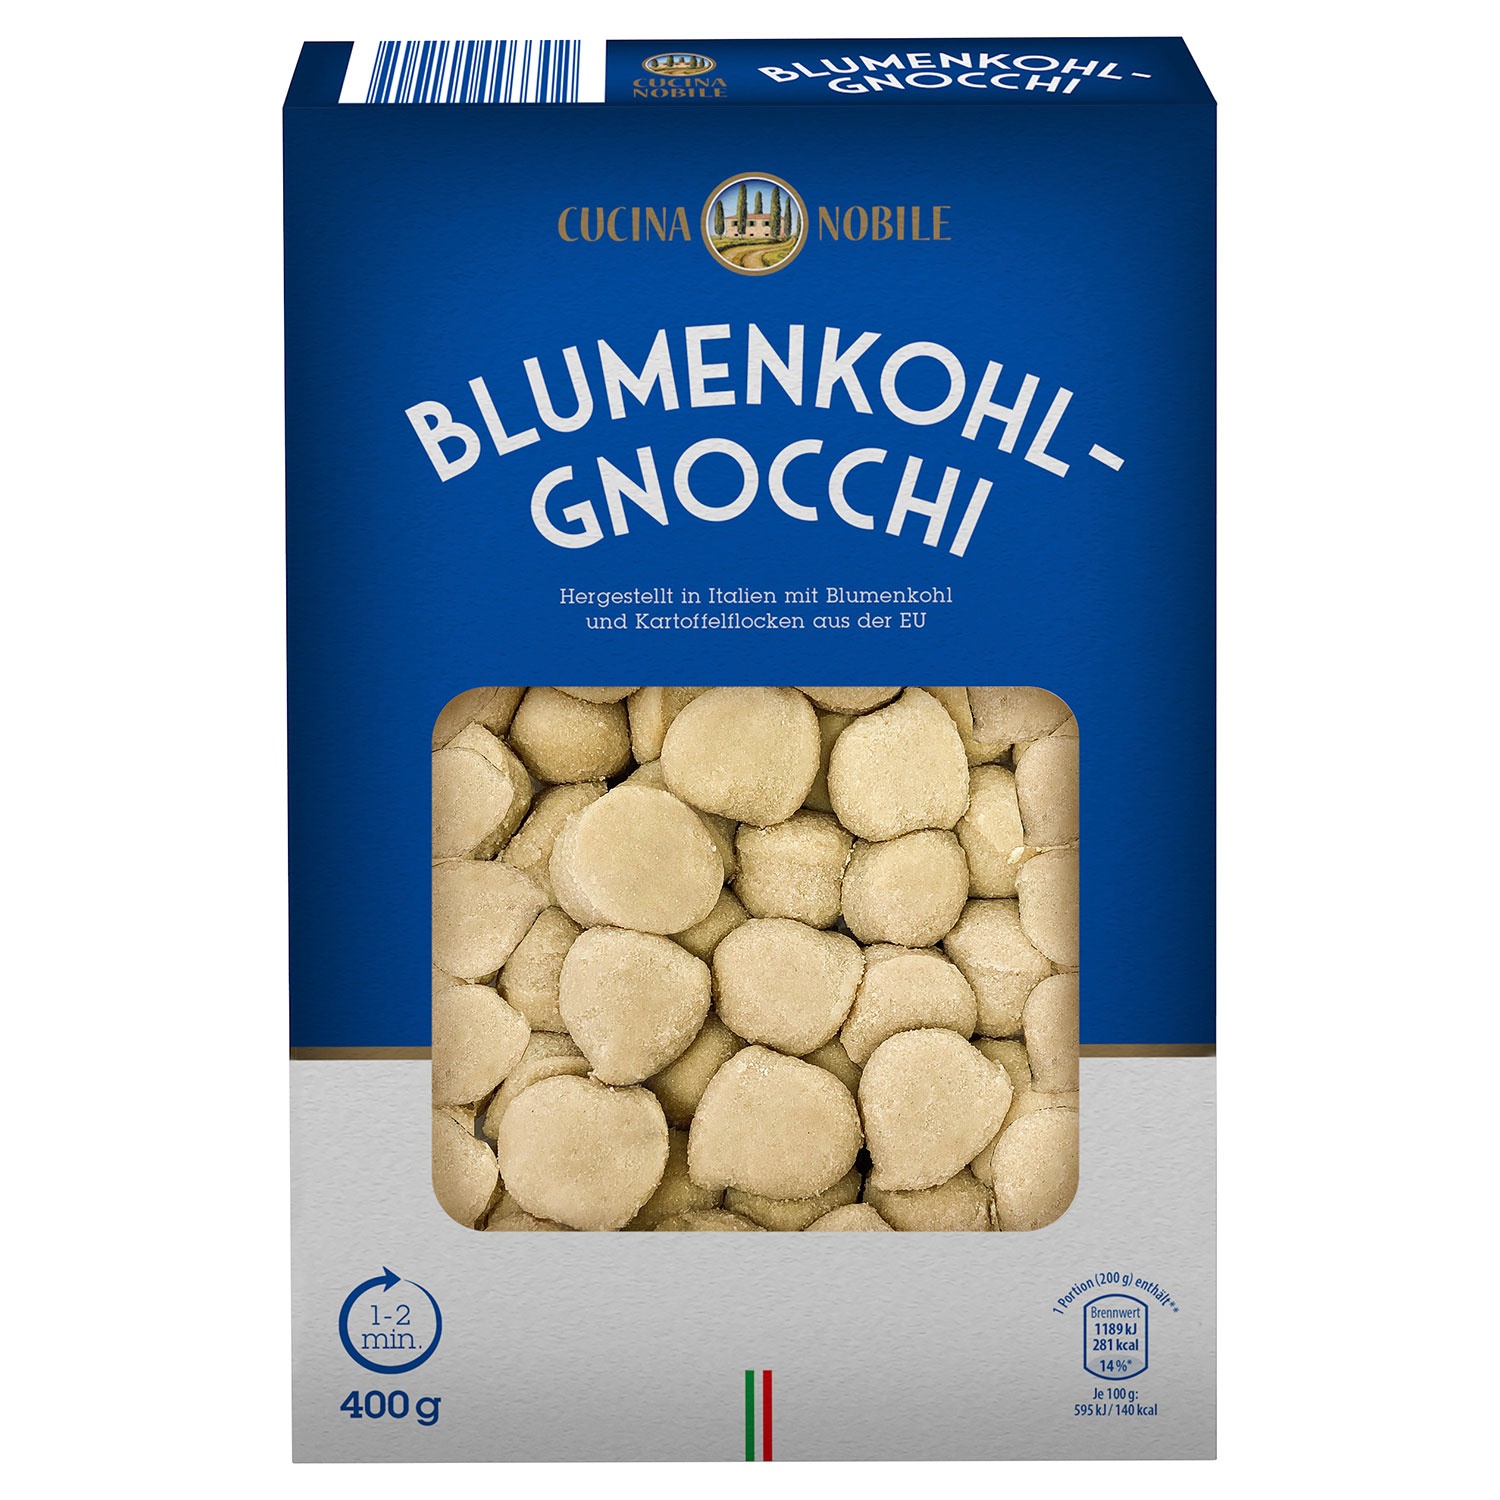 CUCINA NOBILE Blumenkohl-Gnocchi 400 g